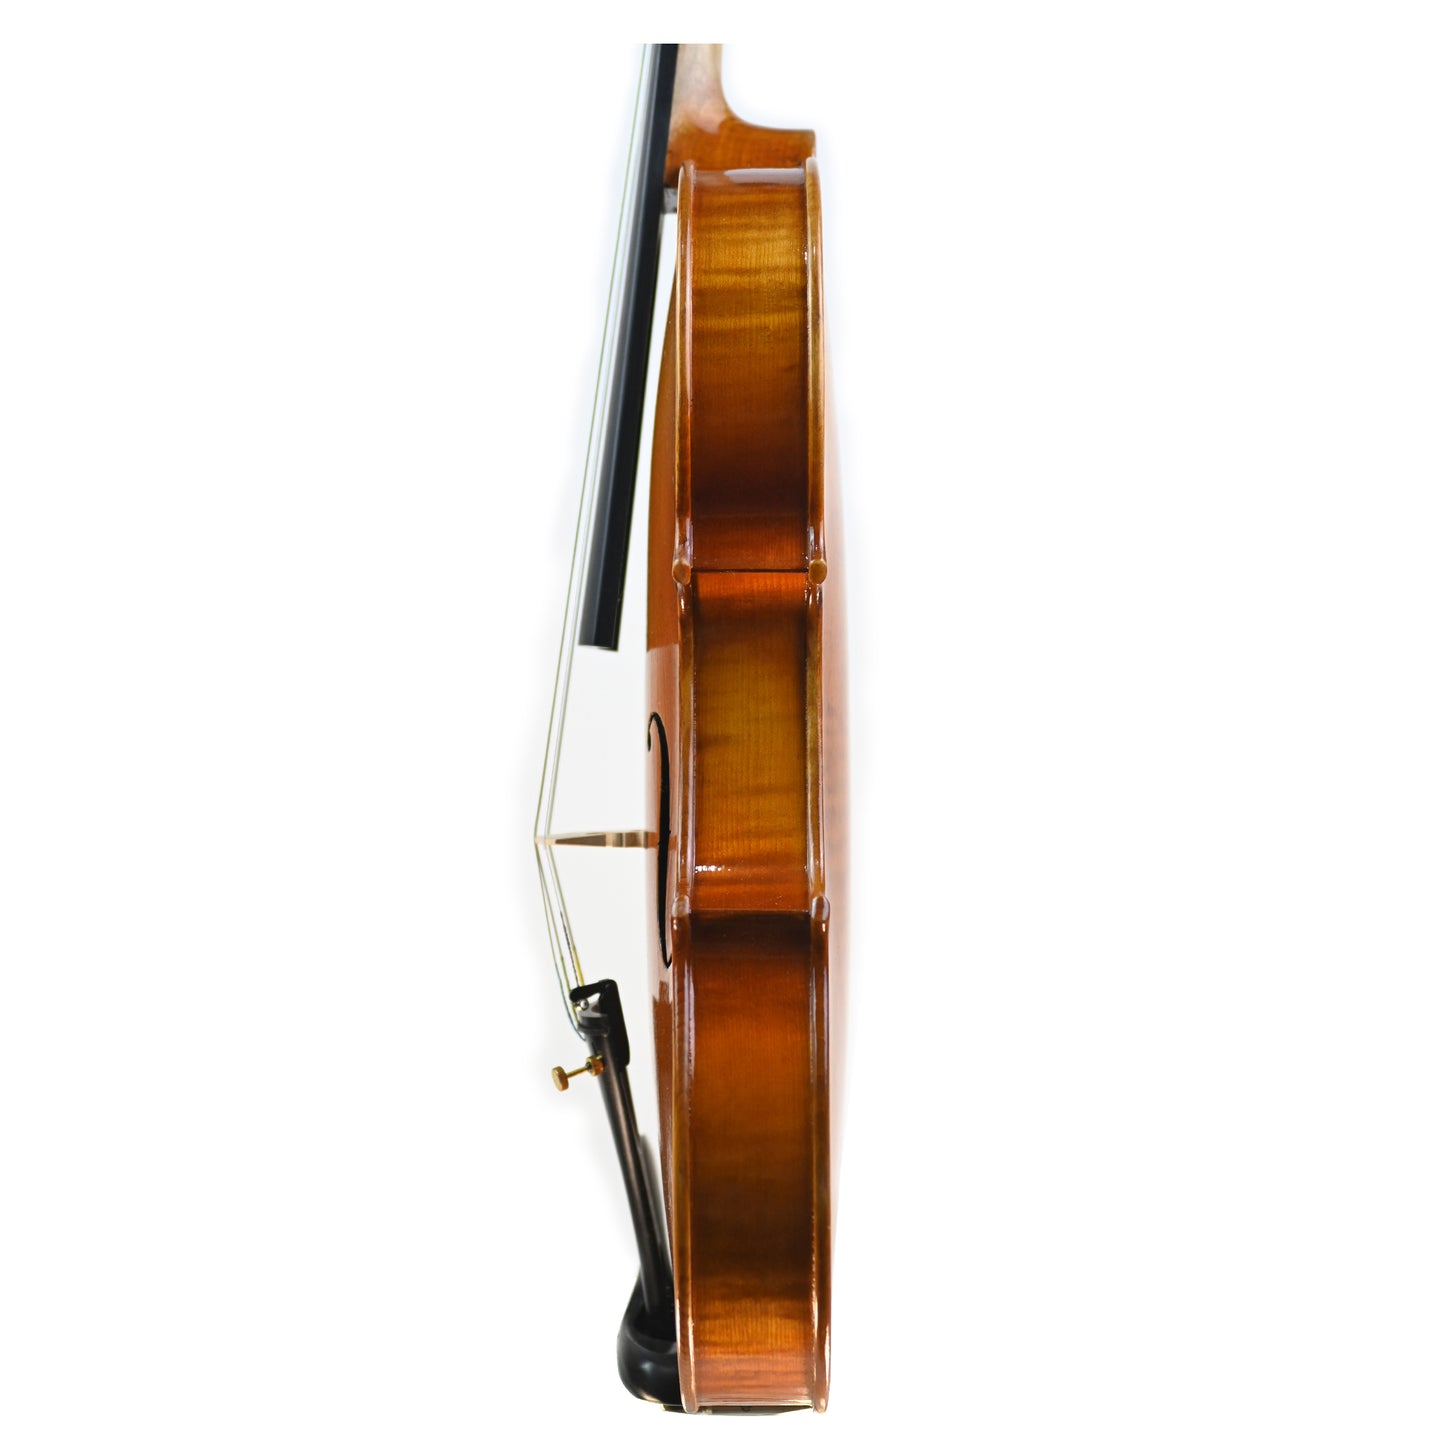 7018 beginner violin left rib